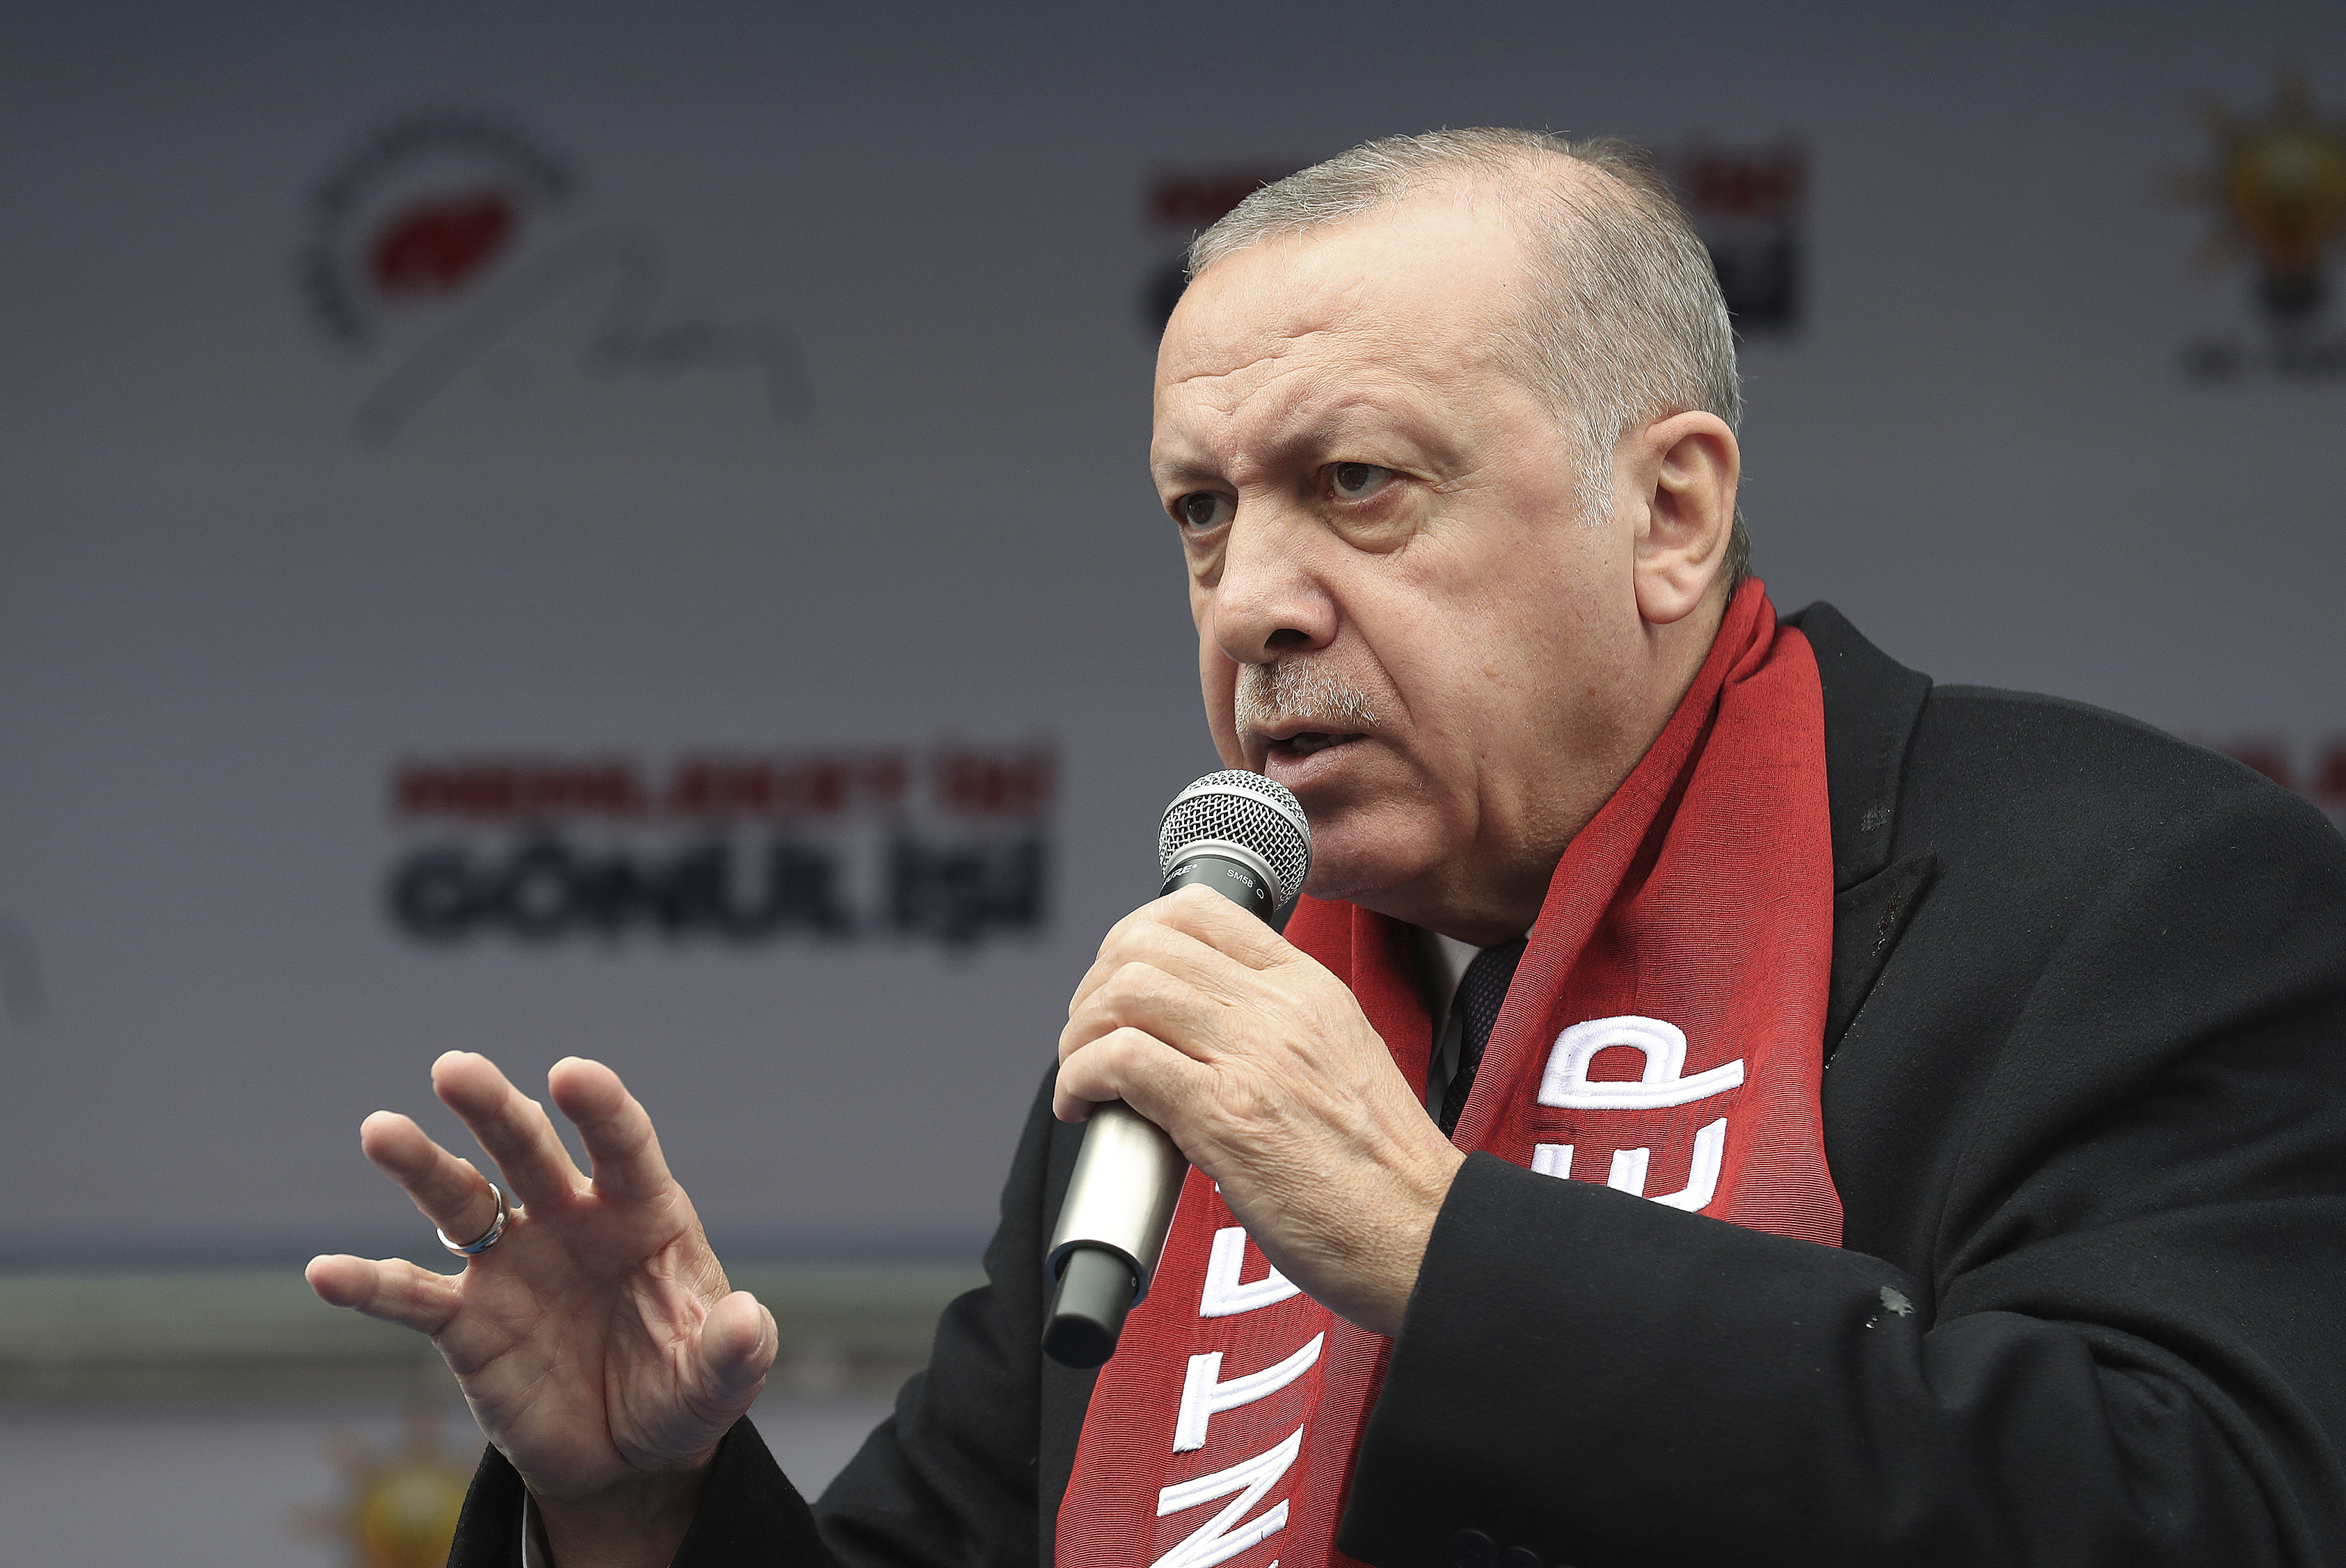 Presidente de Turquía advierte con castigar a terrorista de Christchurch si Nueva Zelanda no lo hace 